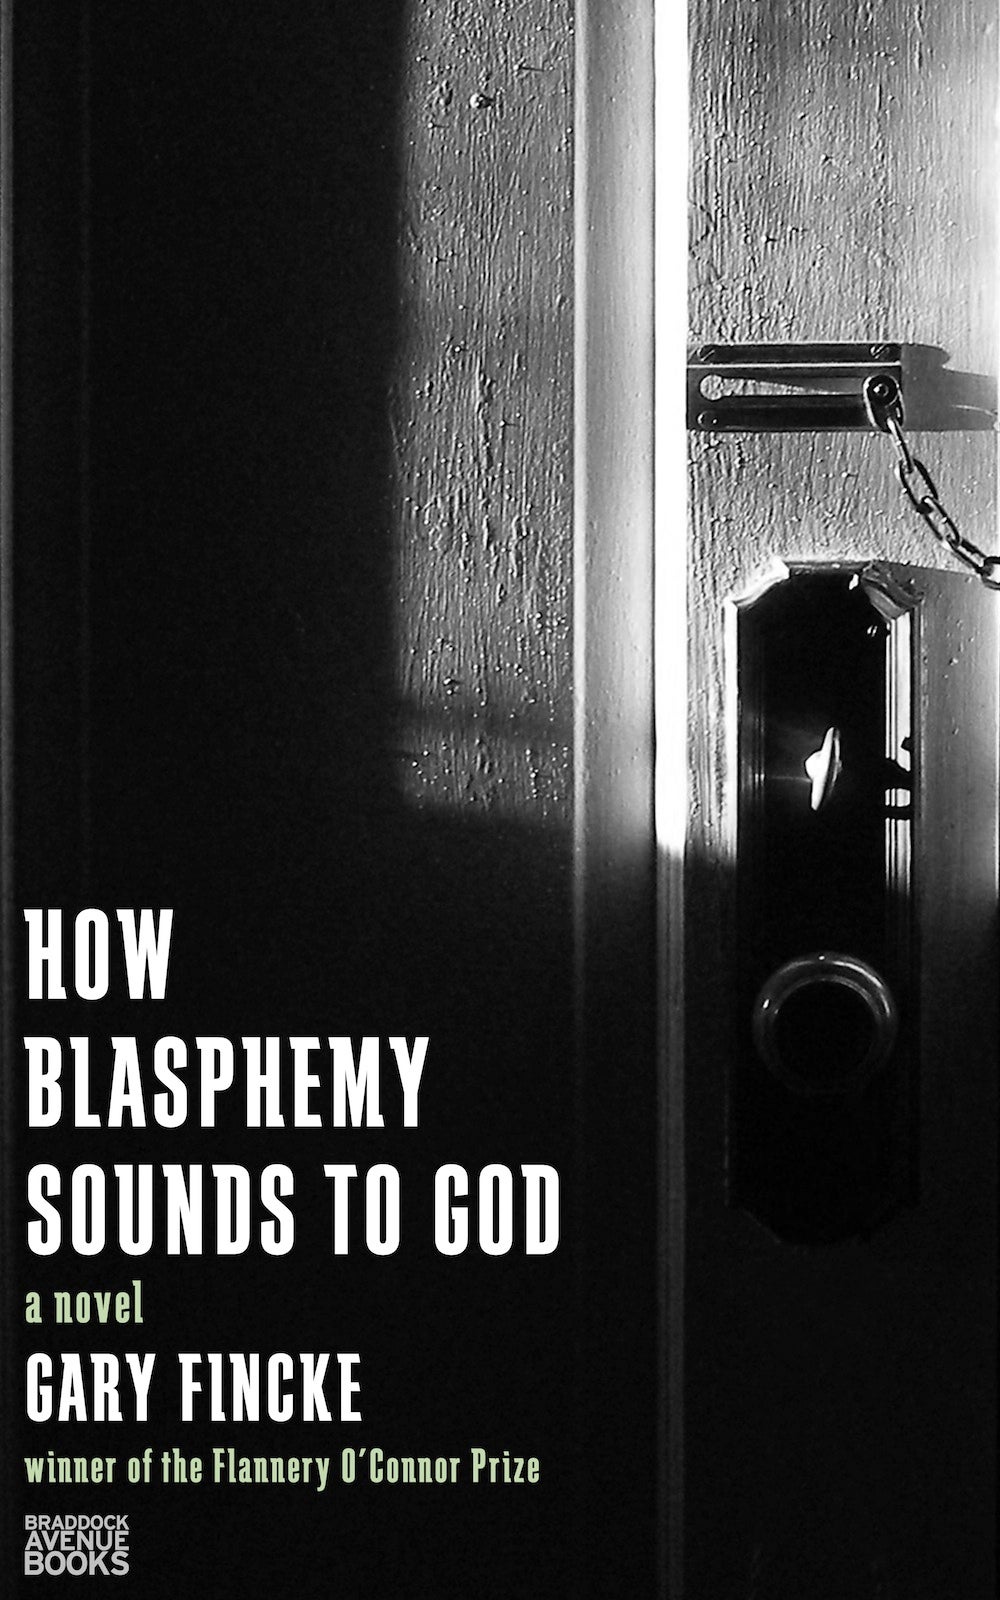 How Blasphemy Sounds to God by Gary Fincke on Braddock Avenue Books